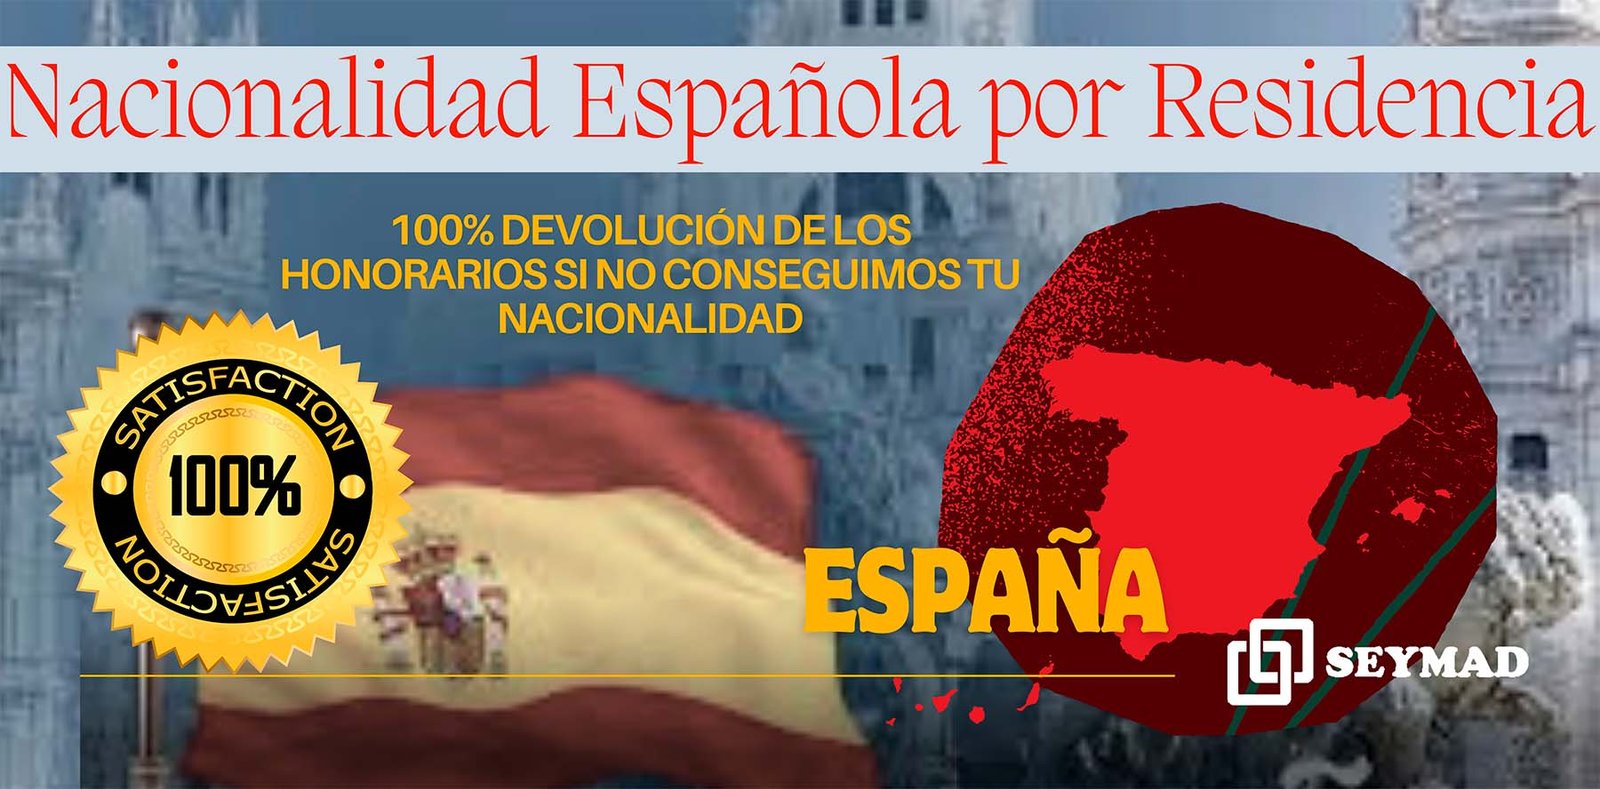 Documentos requeridos para la solicitud de nacionalidad española, incluyendo pasaporte y formulario de aplicación.